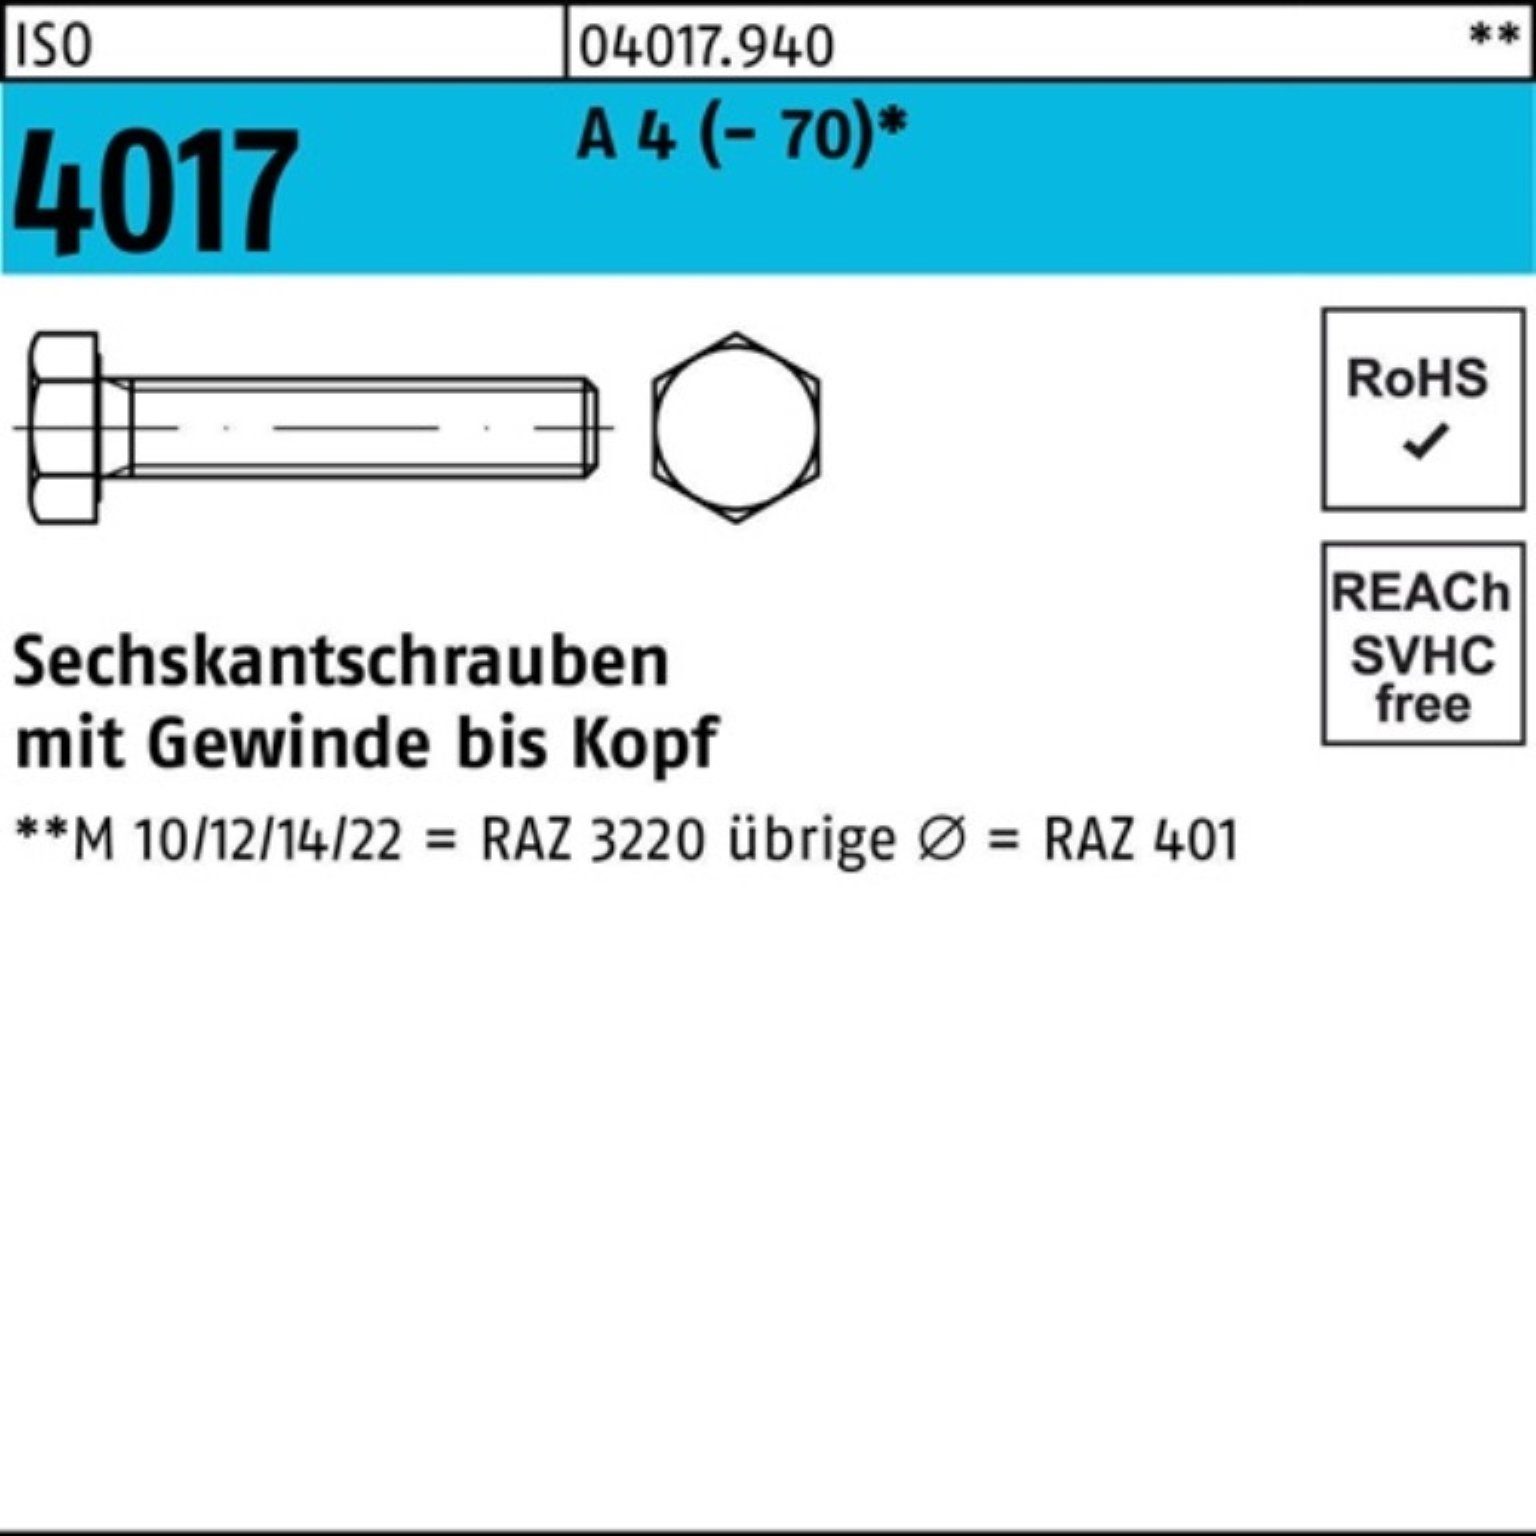 Bufab Sechskantschraube 100er Pack Sechskantschraube ISO 4017 VG M8x 80 A 4 (70) 50 Stück I